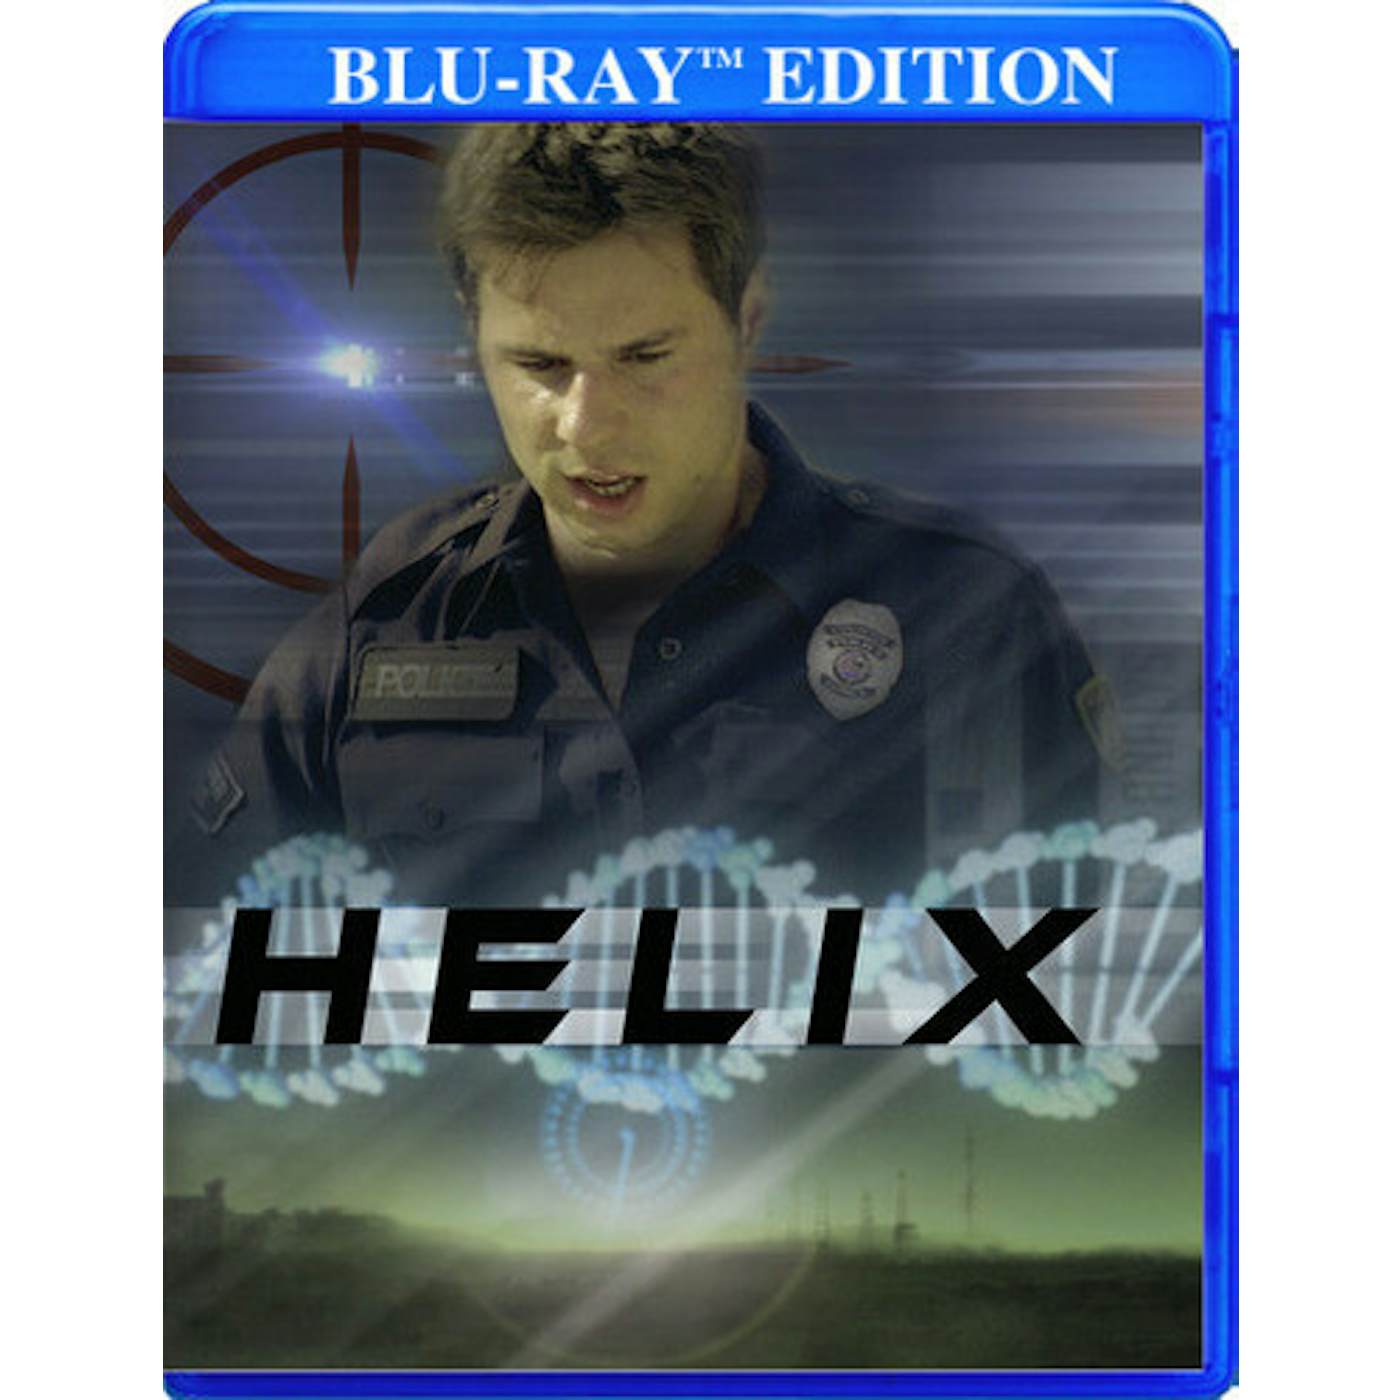 HELIX Blu-ray